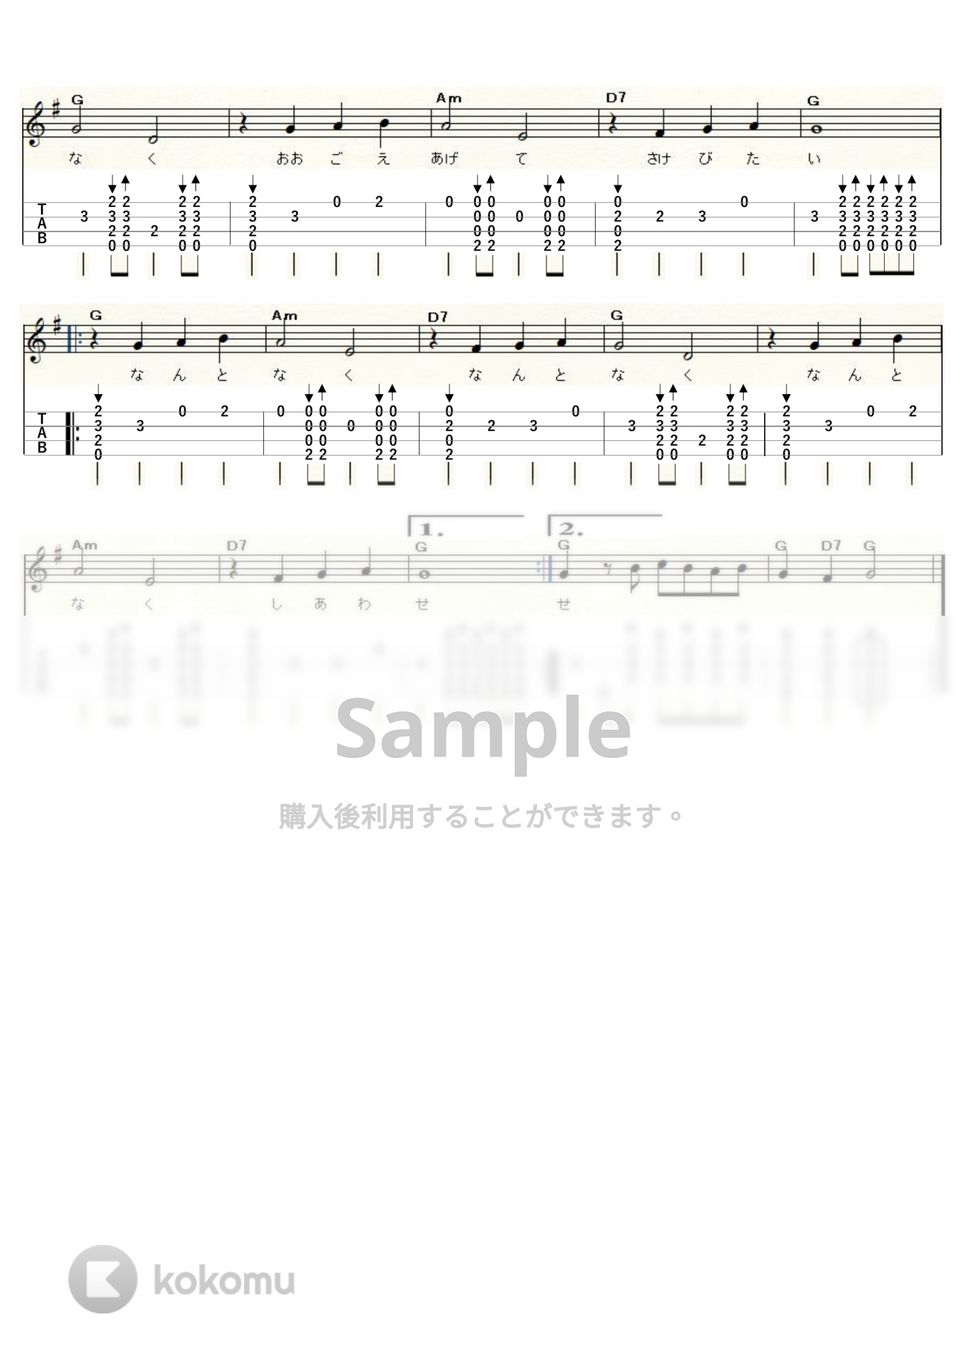 ザ・スパイダース - なんとなくなんとなく (ｳｸﾚﾚｿﾛ / High-G,Low-G / 初～中級) by ukulelepapa